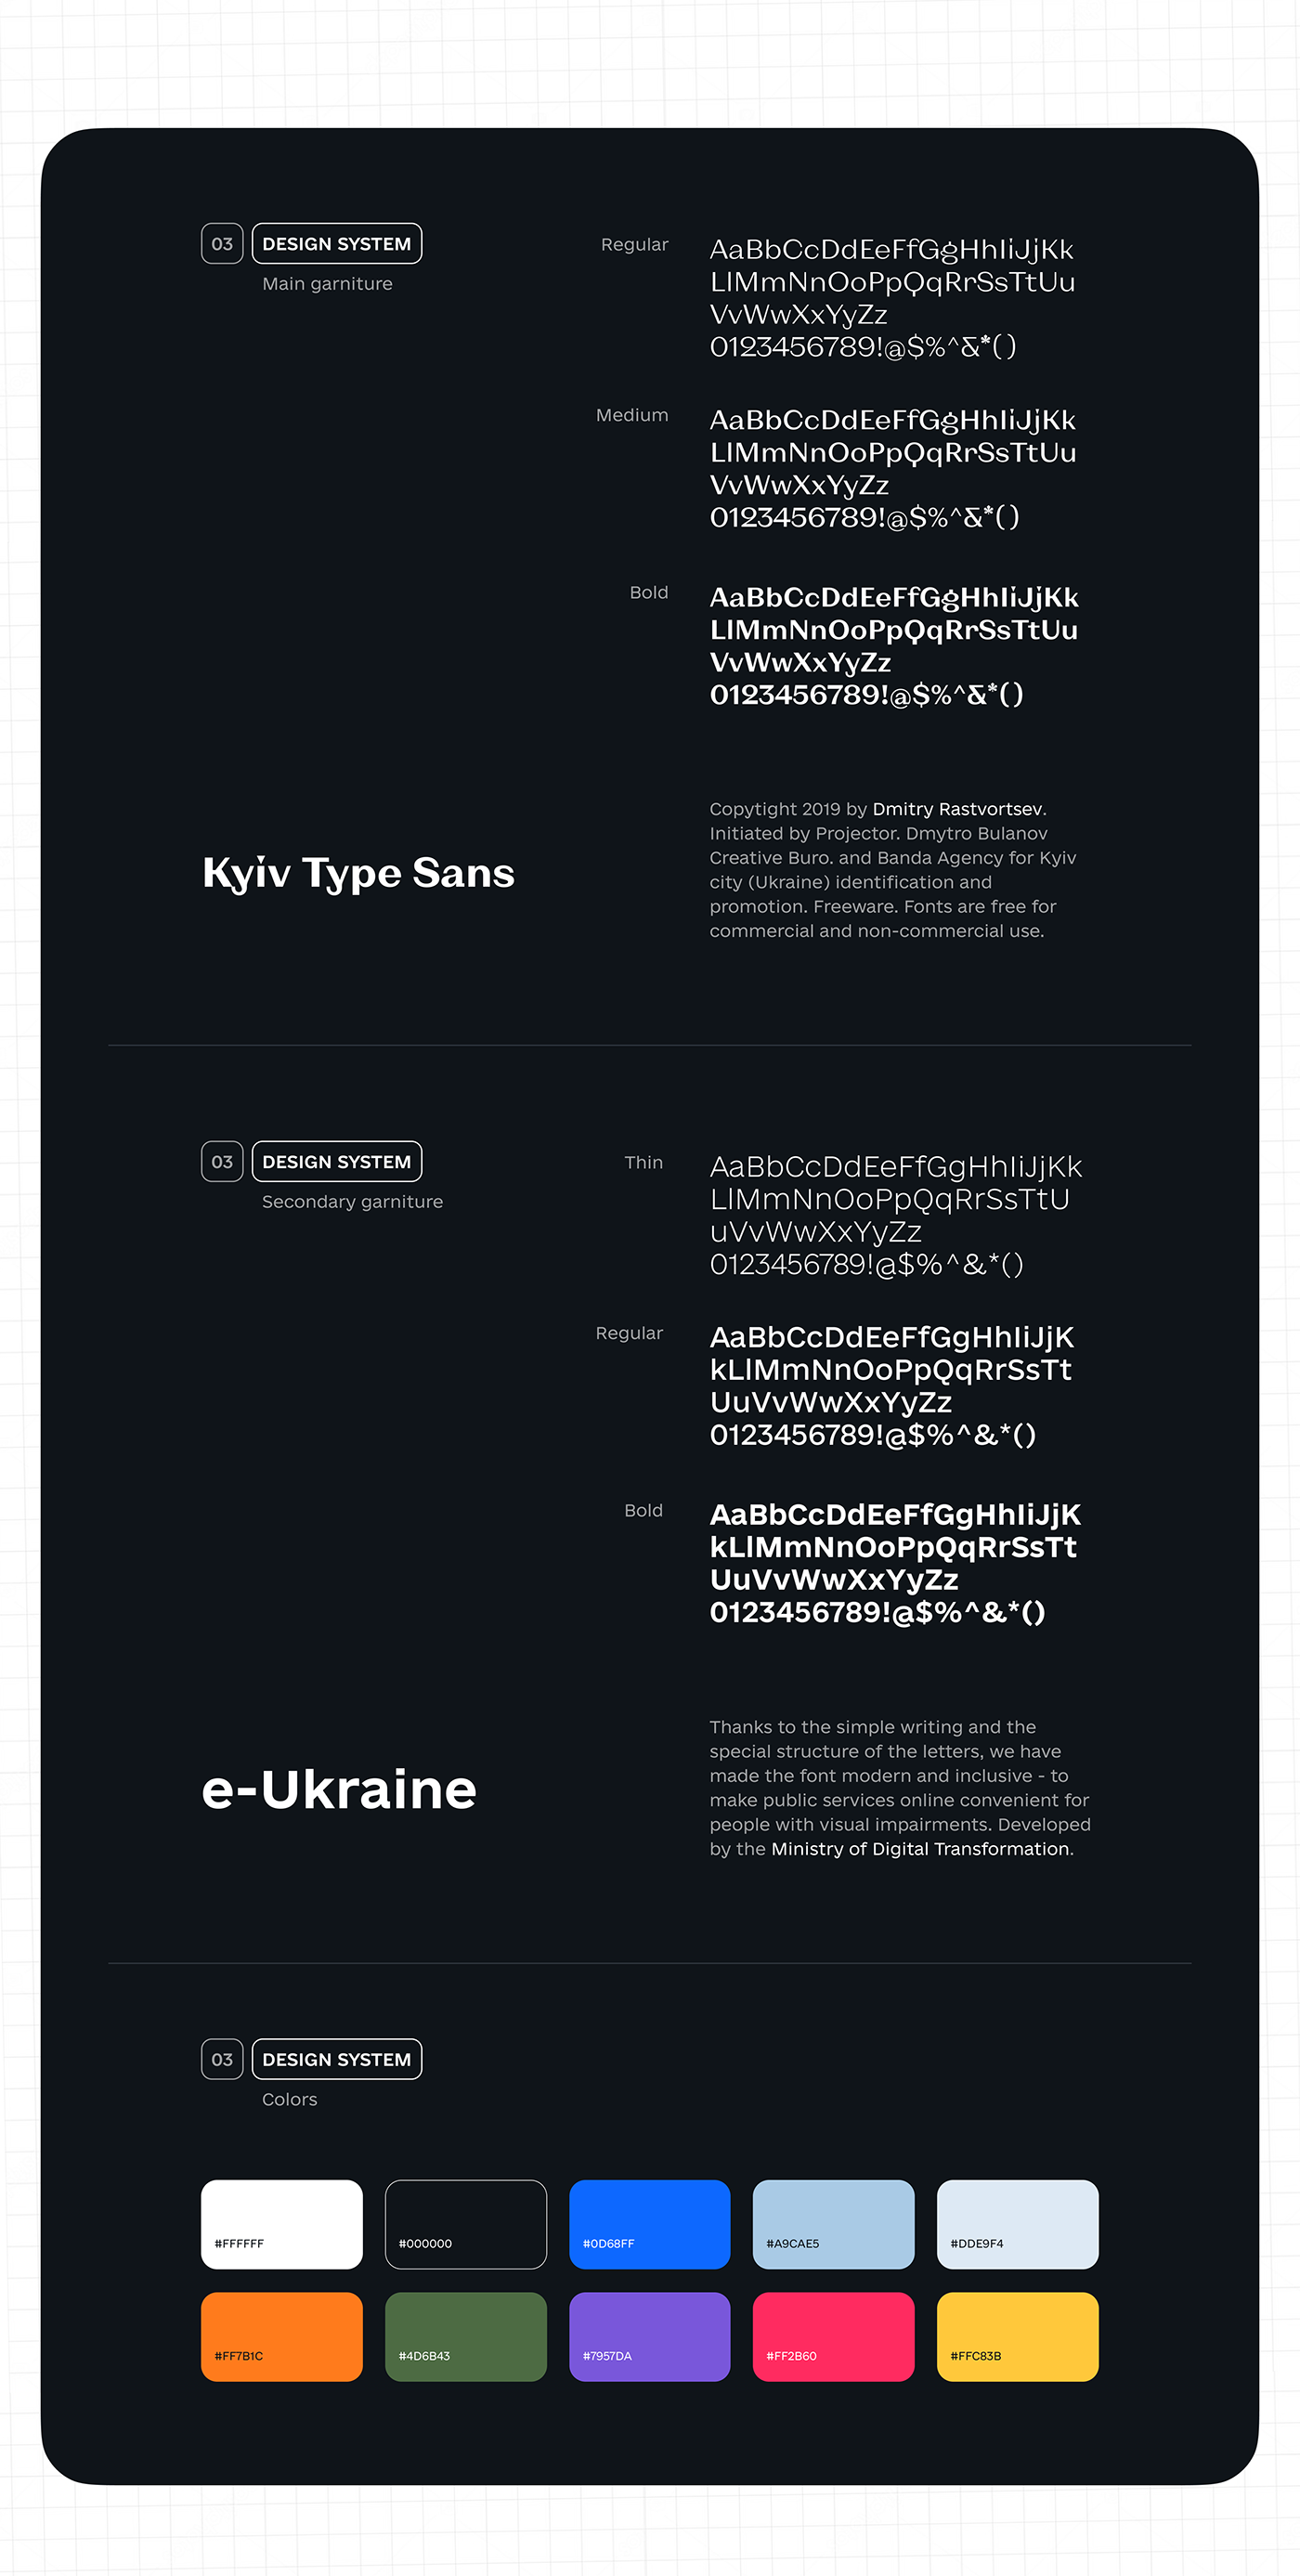 instagram magazine post Stories ukraine War Web Web Design 